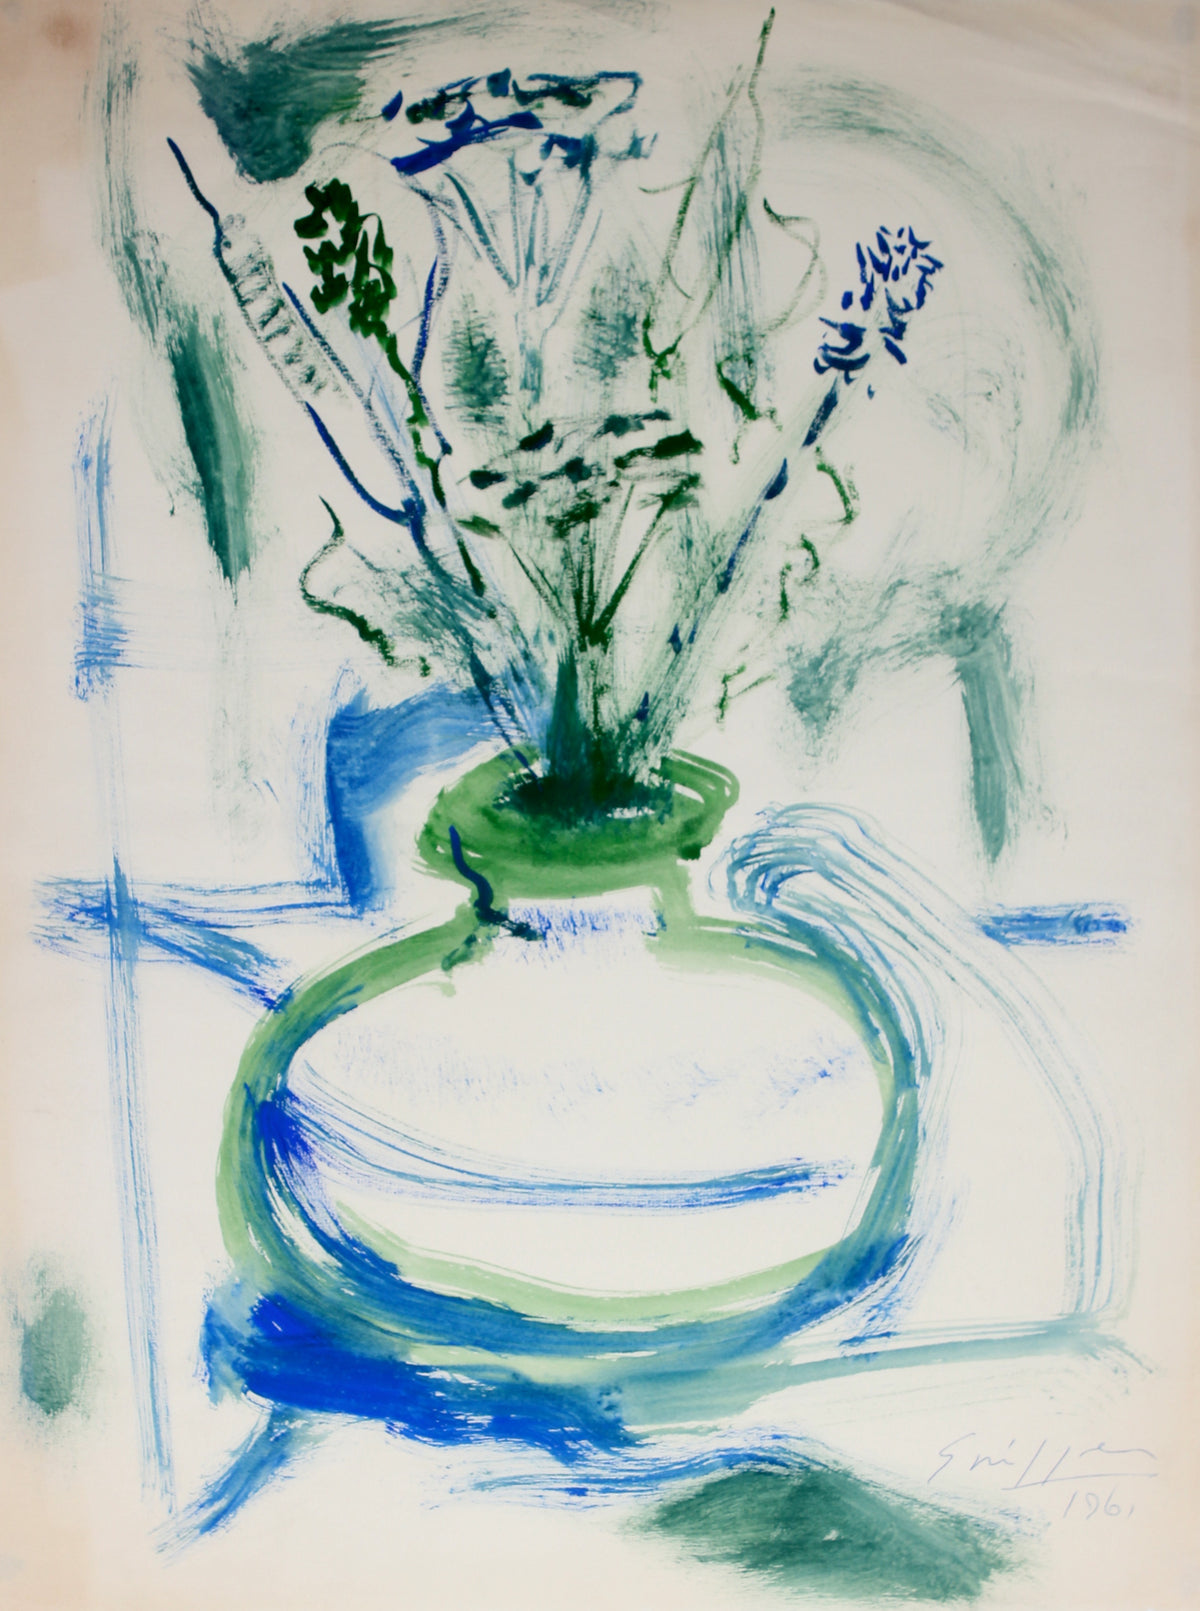 Expressive Still Life of Flowers in a Vase &lt;br&gt;1961 Watercolor&lt;br&gt;&lt;br&gt;#49890